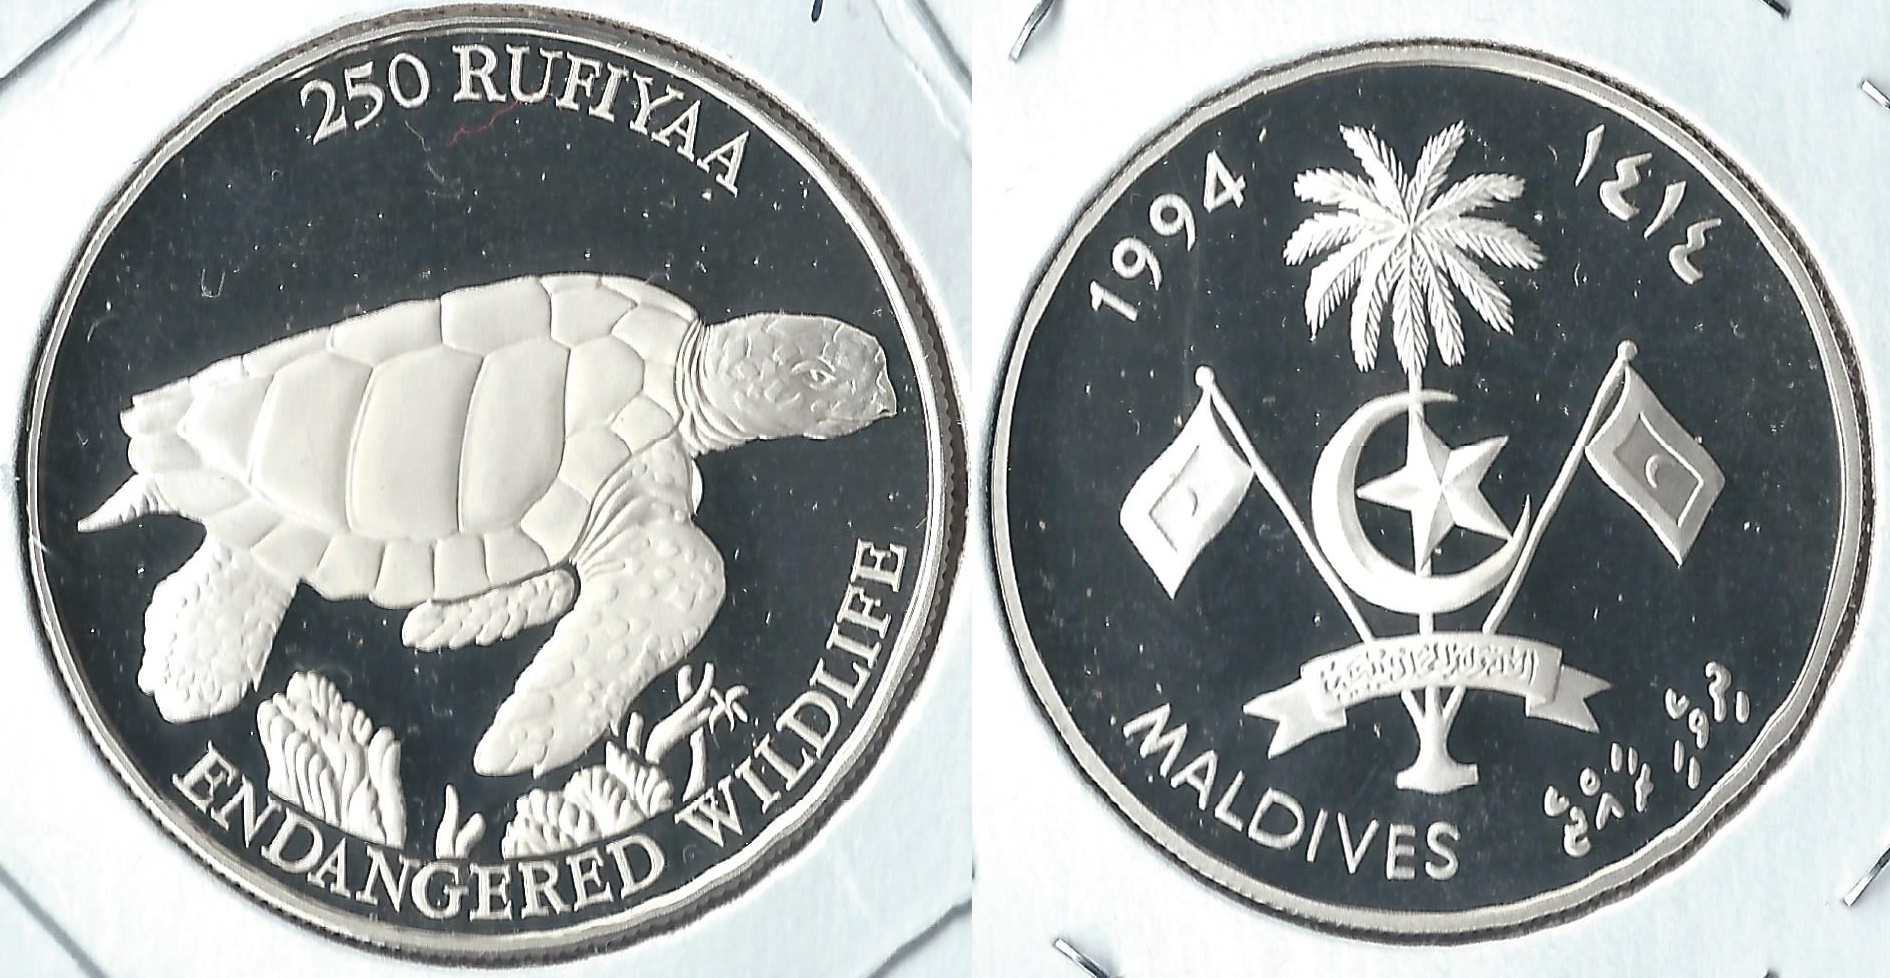 1994 maldives 250 rufiyaa.jpg